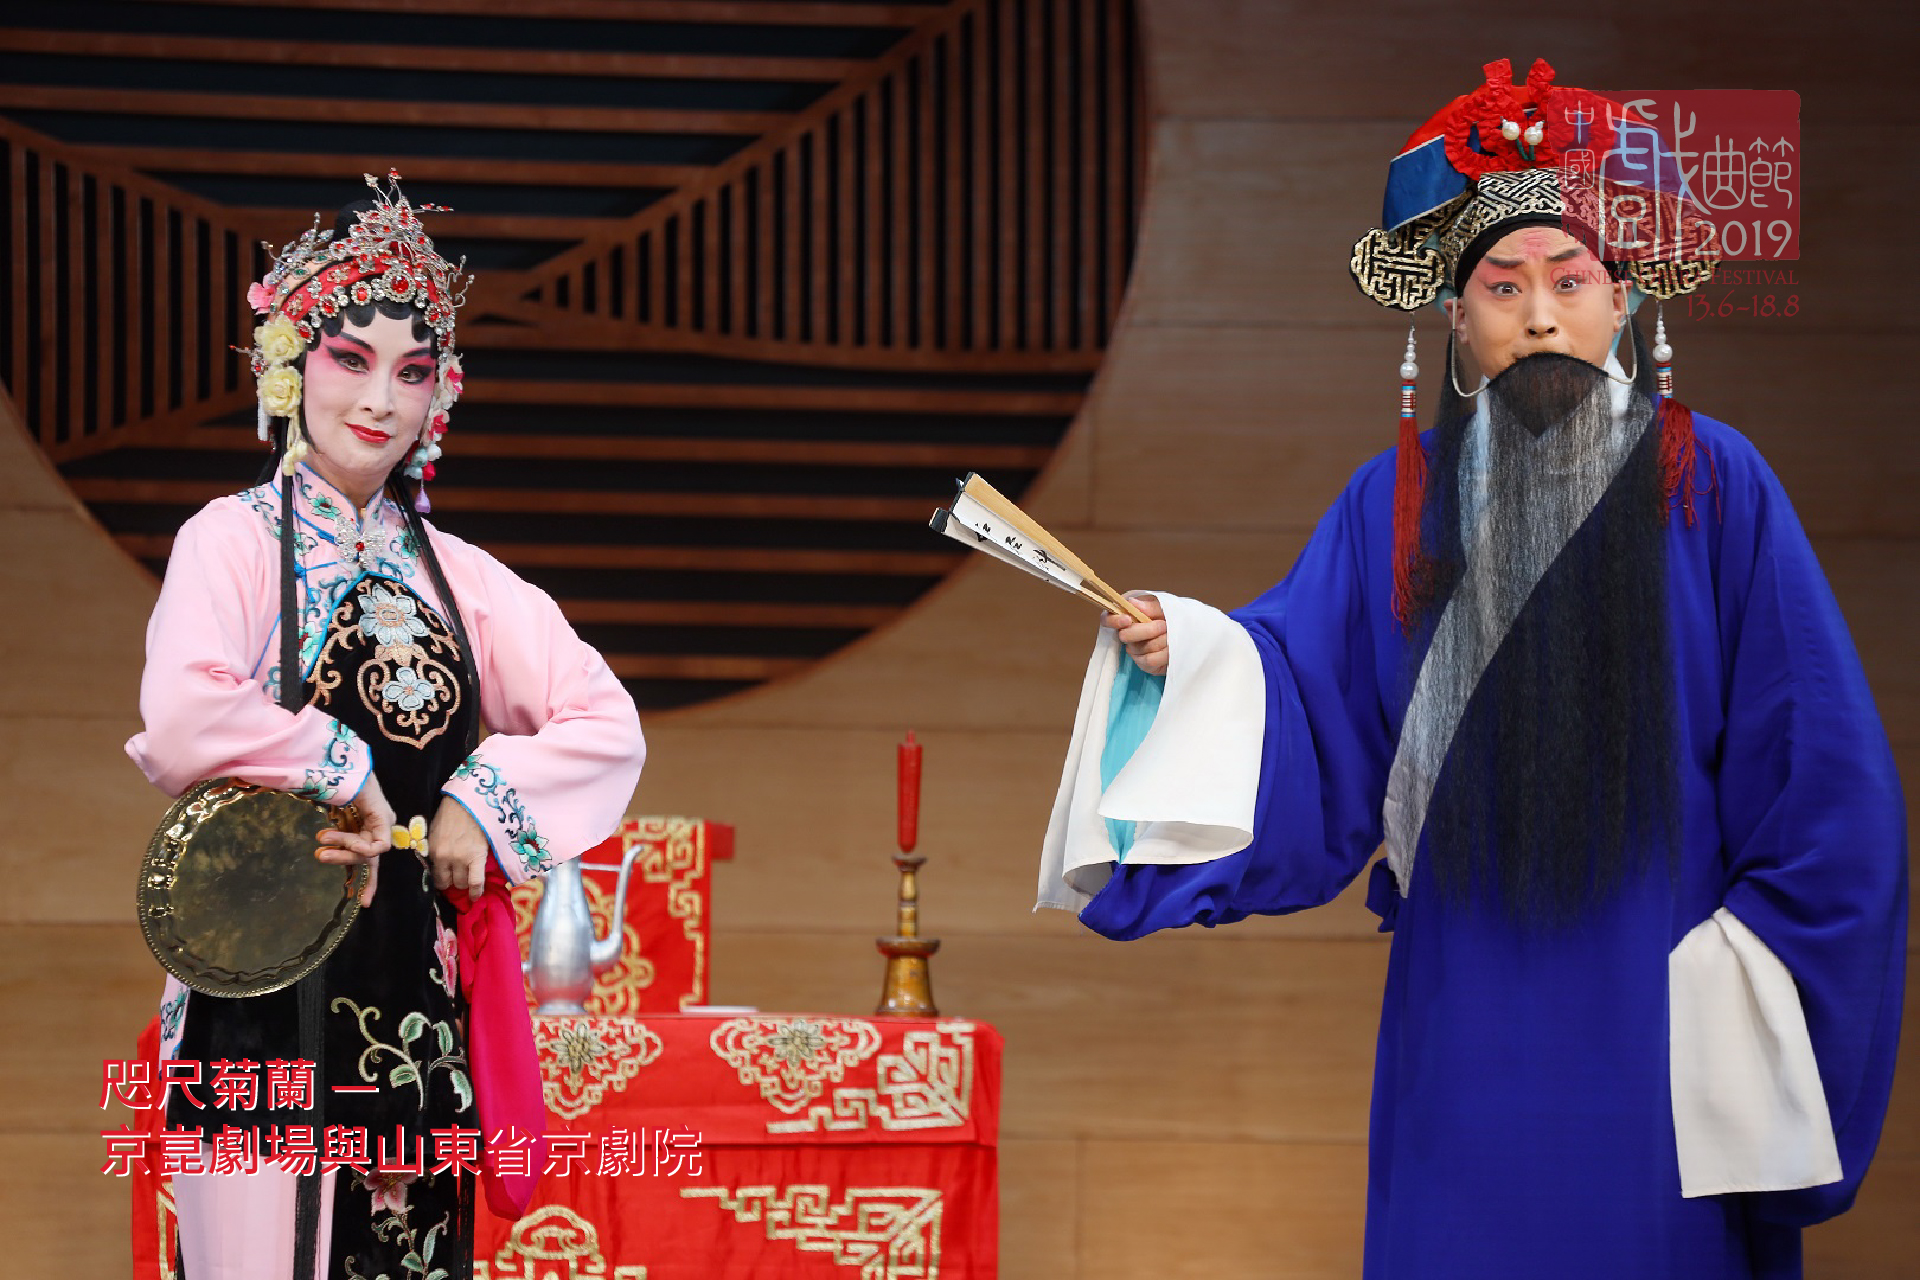 京劇《遊龍戲鳳》鄧宛霞(左)、孫衛安(右)